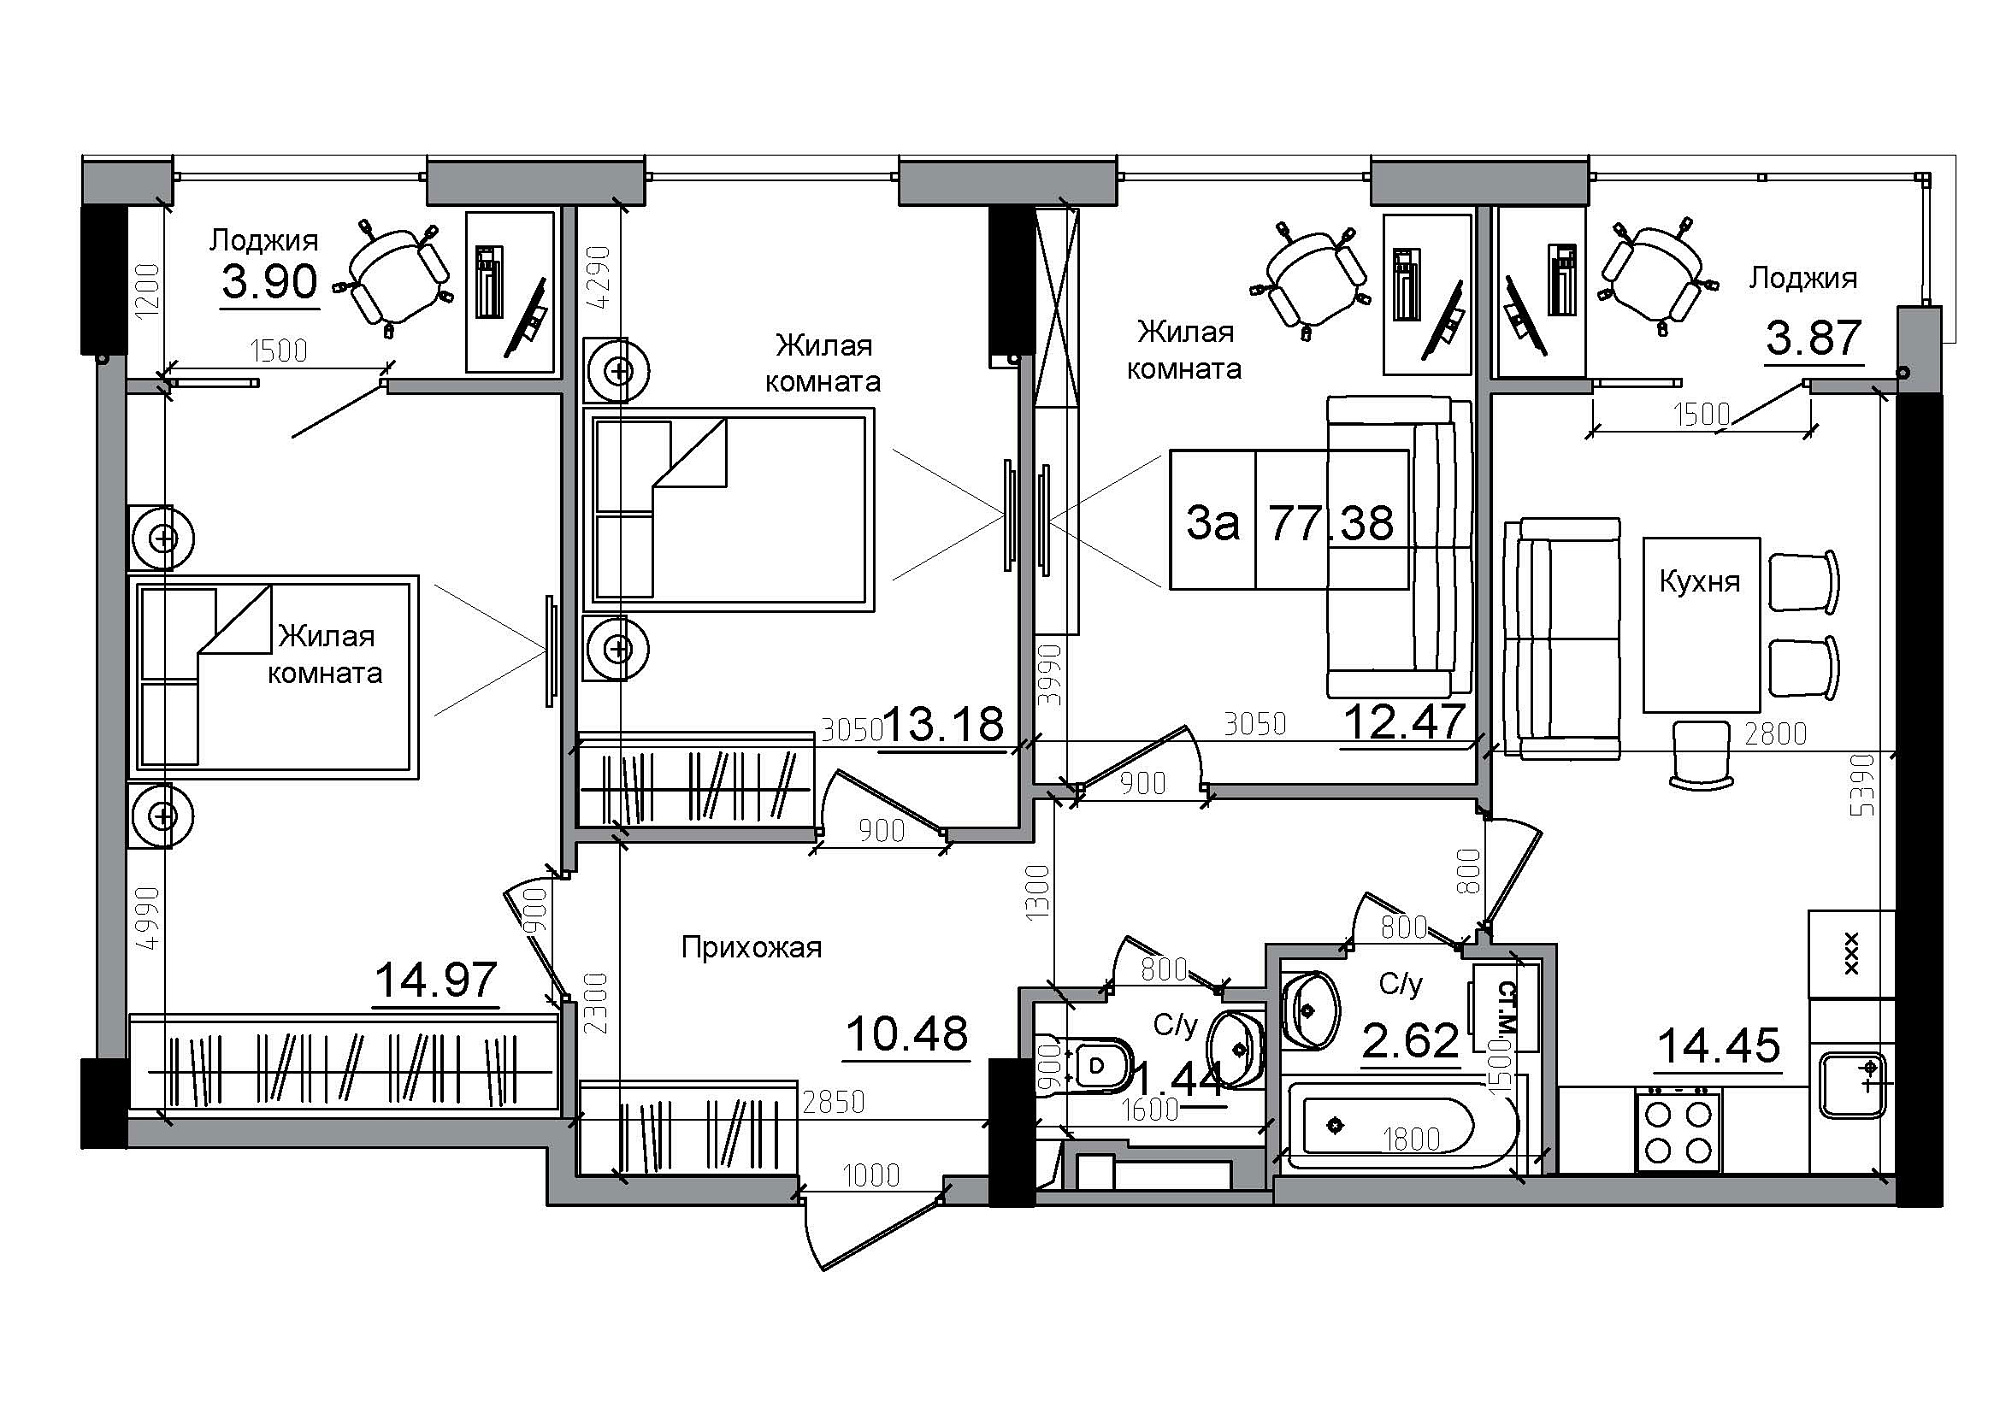 Планировка 3-к квартира площей 77.38м2, AB-12-02/00010.